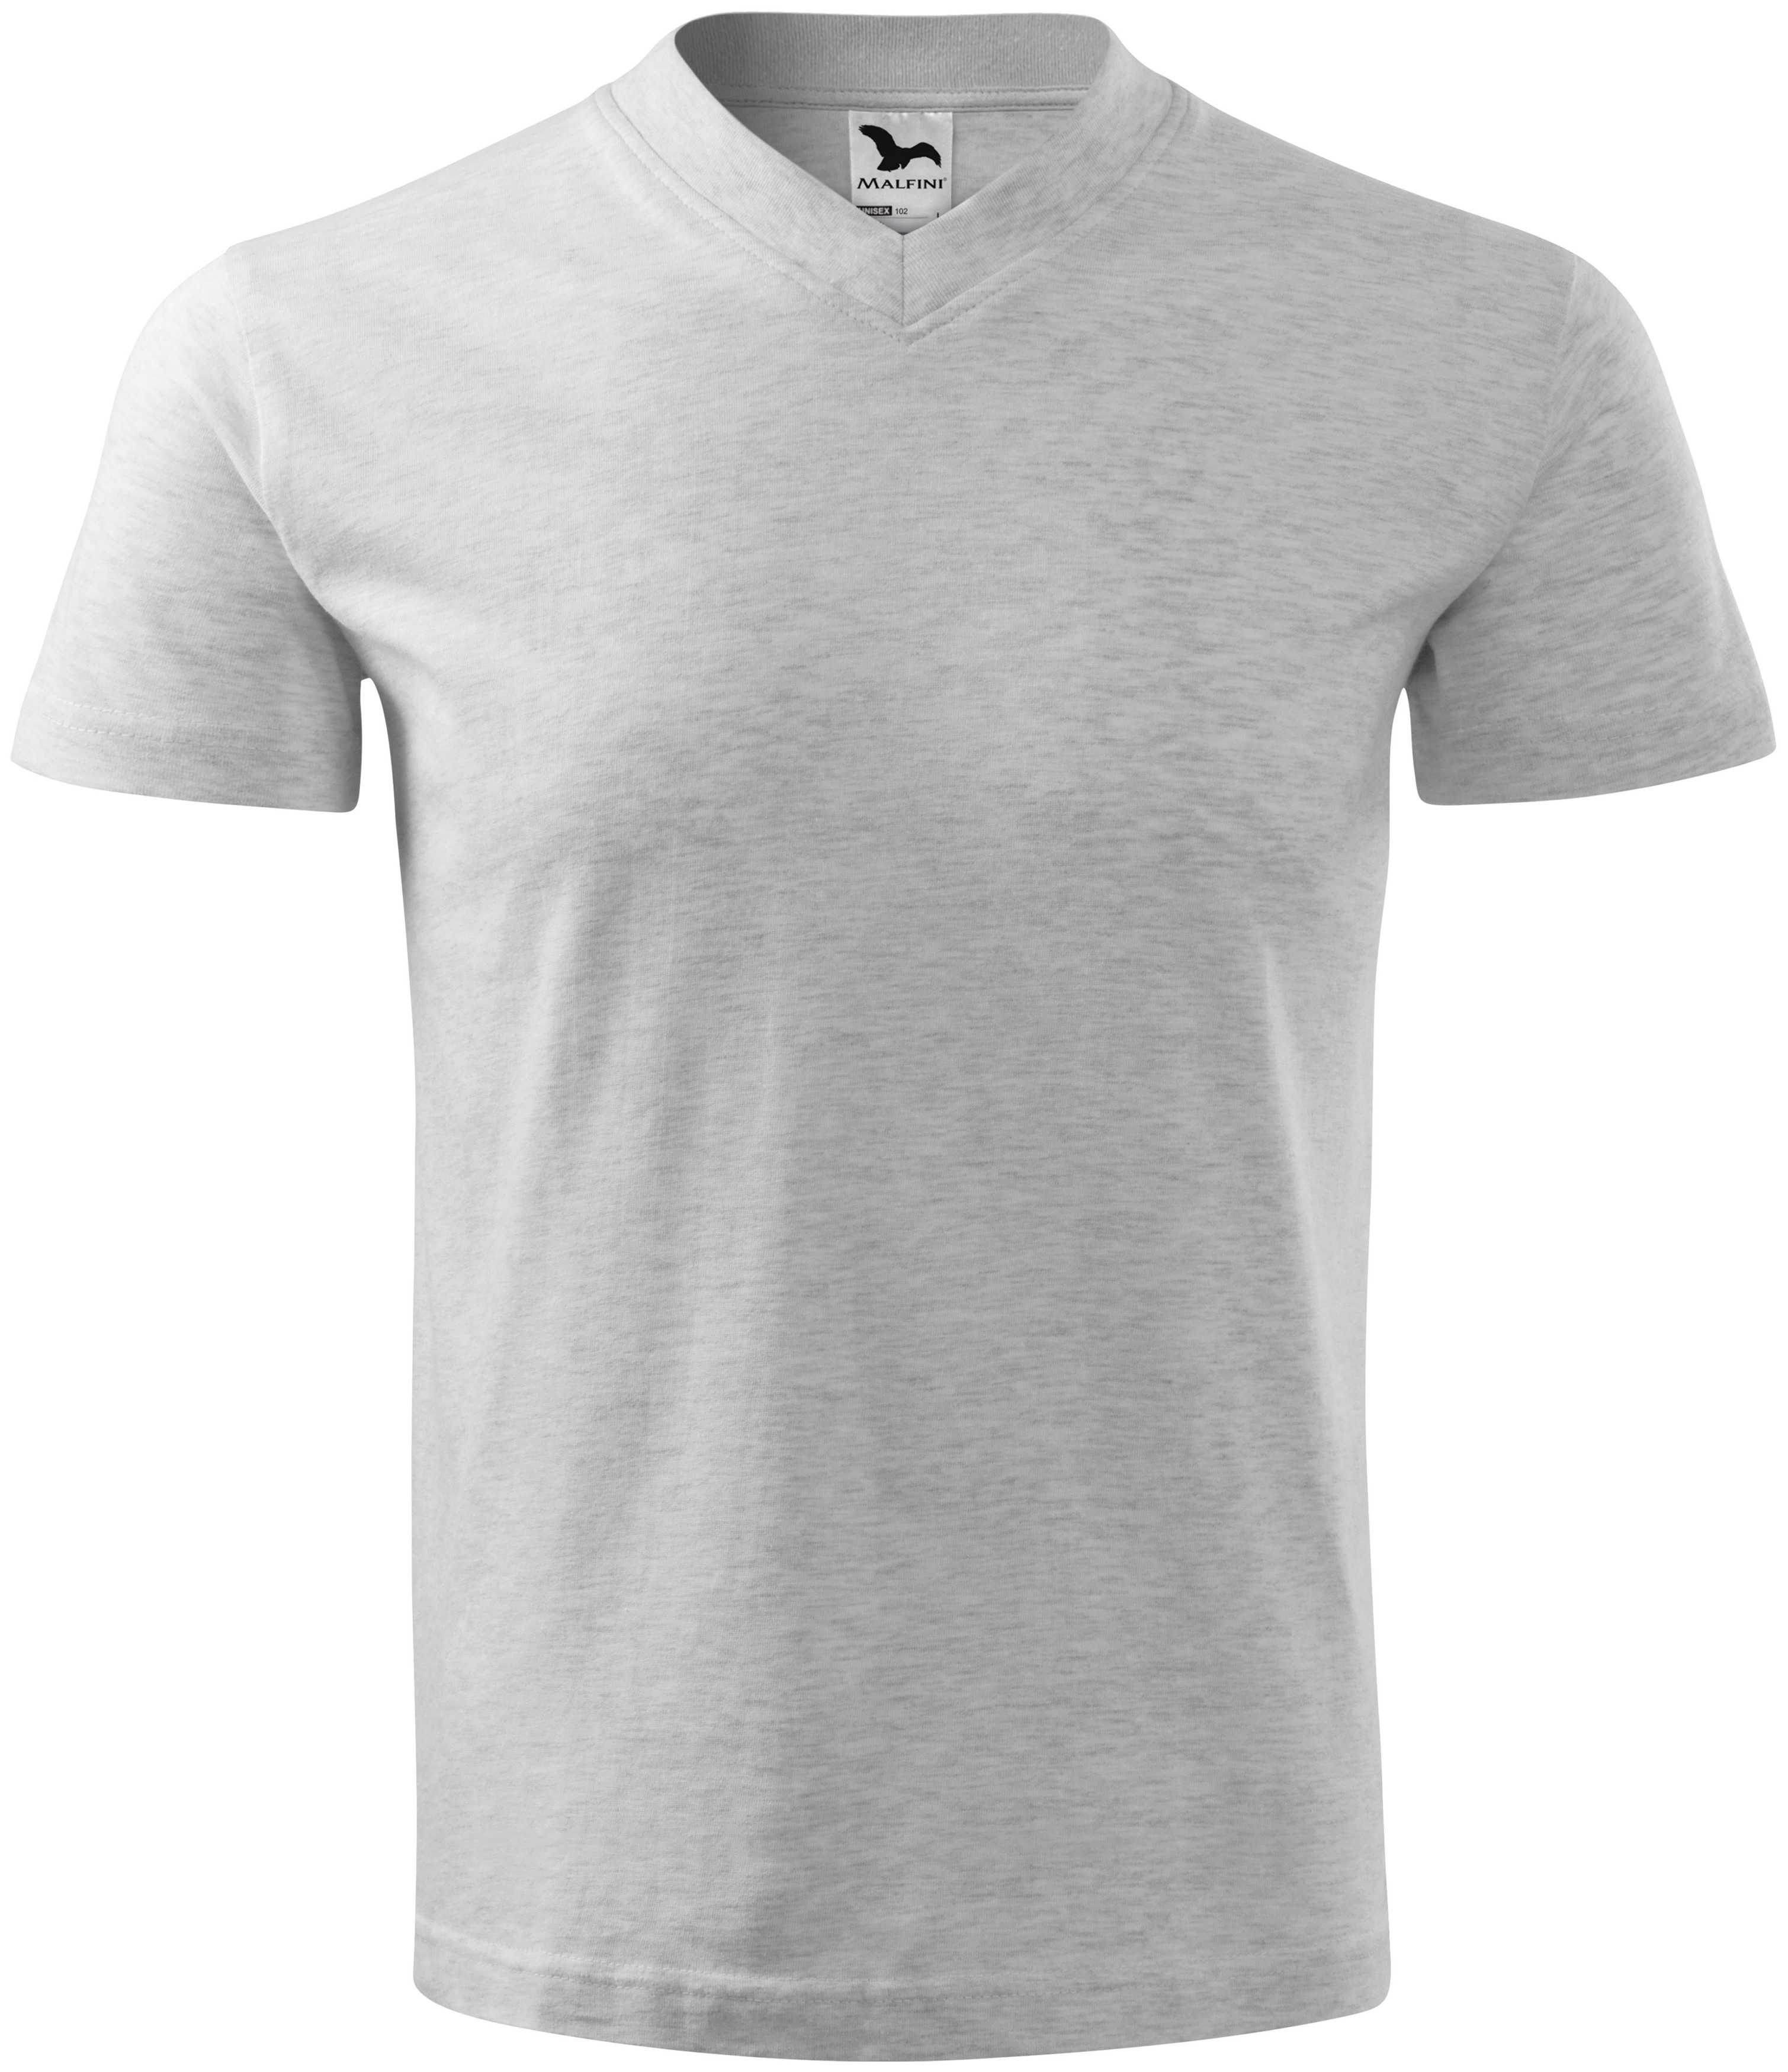 Μπλουζάκι με κοντά μανίκια, μεσαίο βάρος, ανοιχτό γκρι μάρμαρο, XL